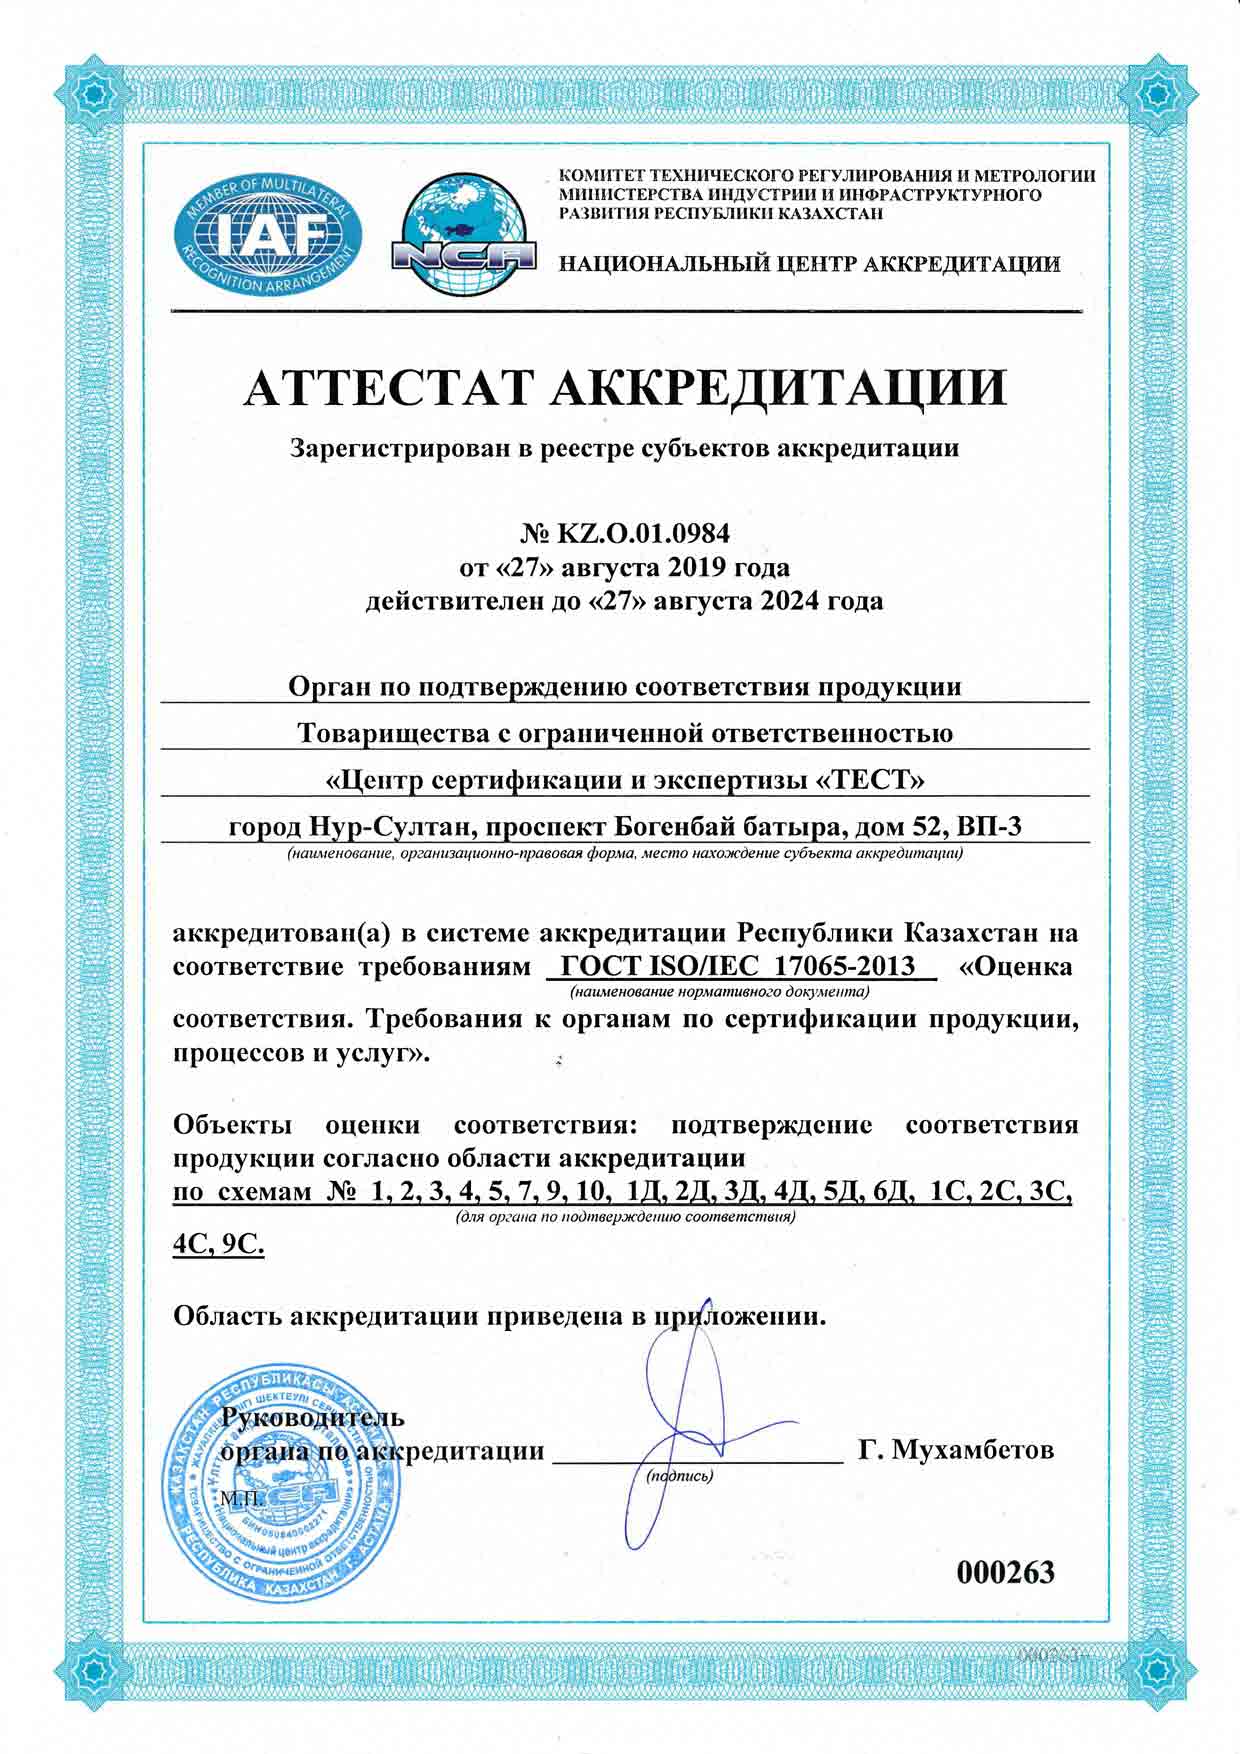 аттестат аккредитации KZ.O.01.0984 от 27.08.2019г.